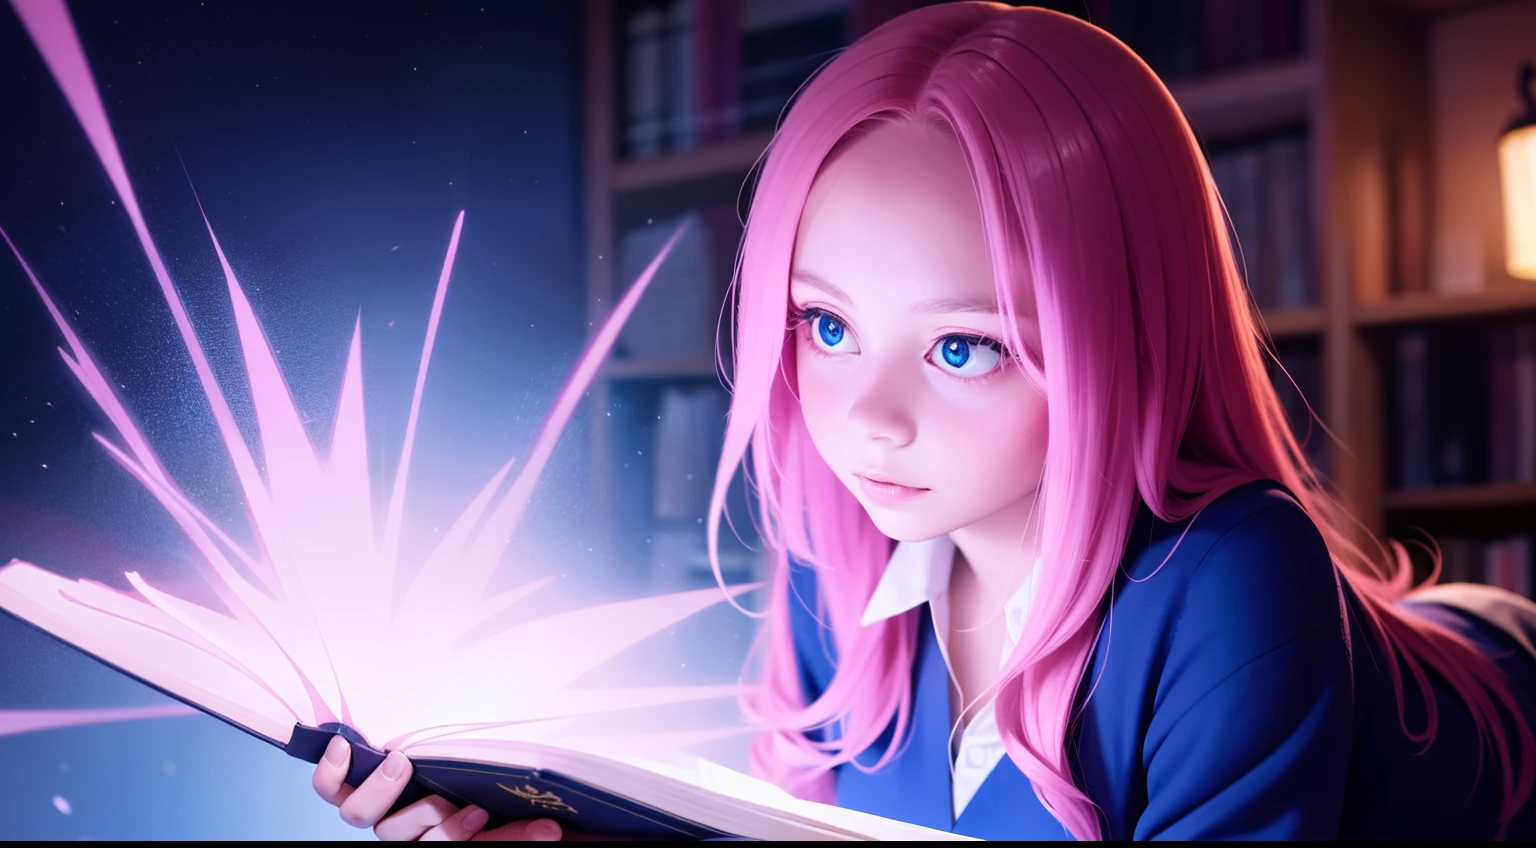 "Uma garota fotorrealista de alta qualidade estilo anime com cabelo rosa, Vestido com um traje mágico com runas brilhantes, Lançando feitiços em uma biblioteca mágica cheia de tomos antigos e artefatos místicos, tirada com uma Câmera Encantada Avançada e utilizando uma Lente Etérea